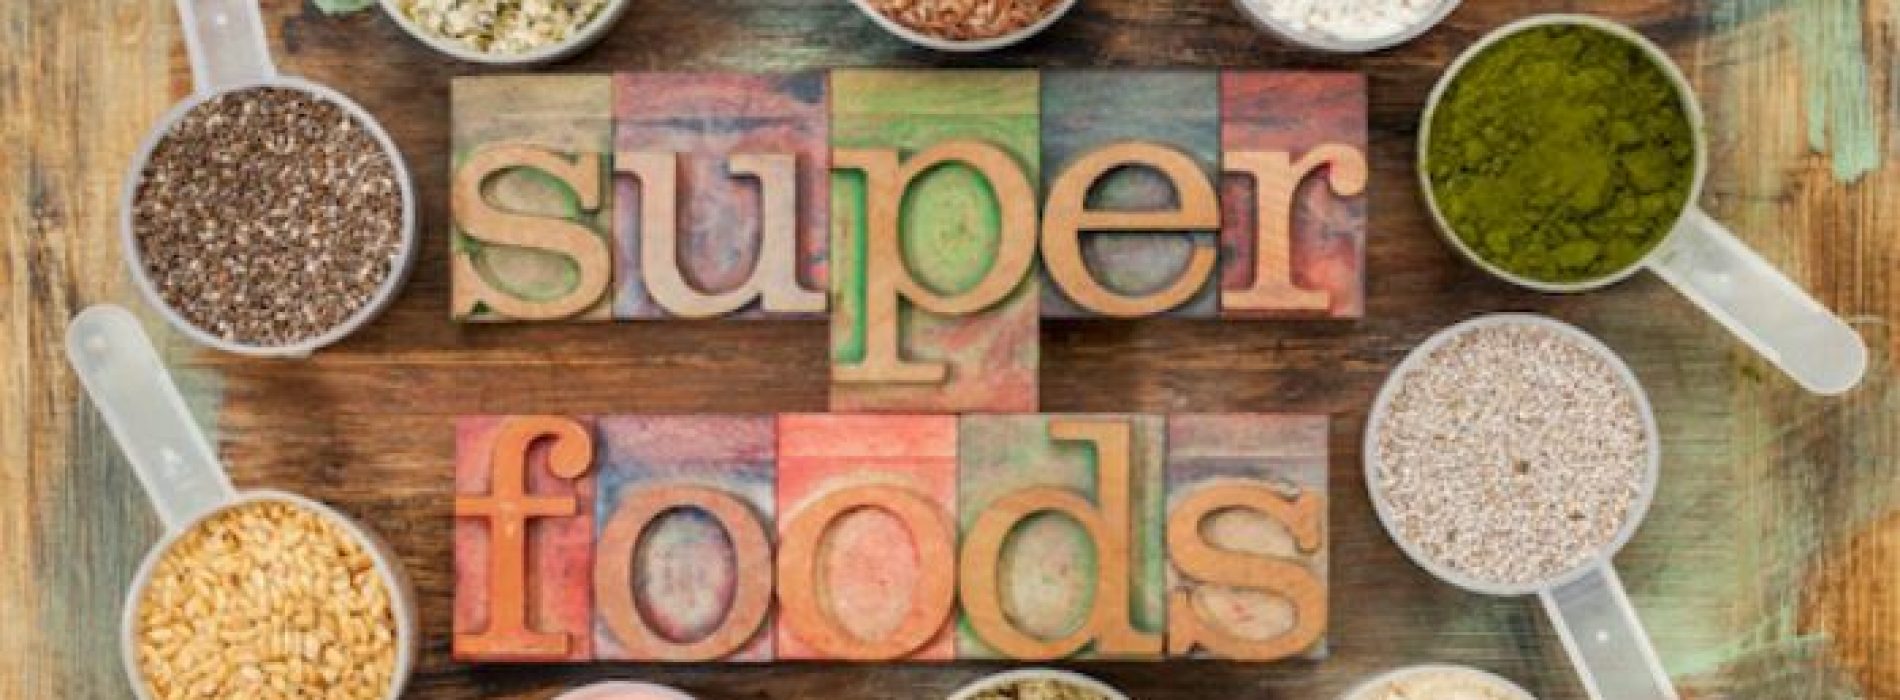 Je immuunsysteem verbeteren? Dat kan je bereiken door deze 7 superfoods!